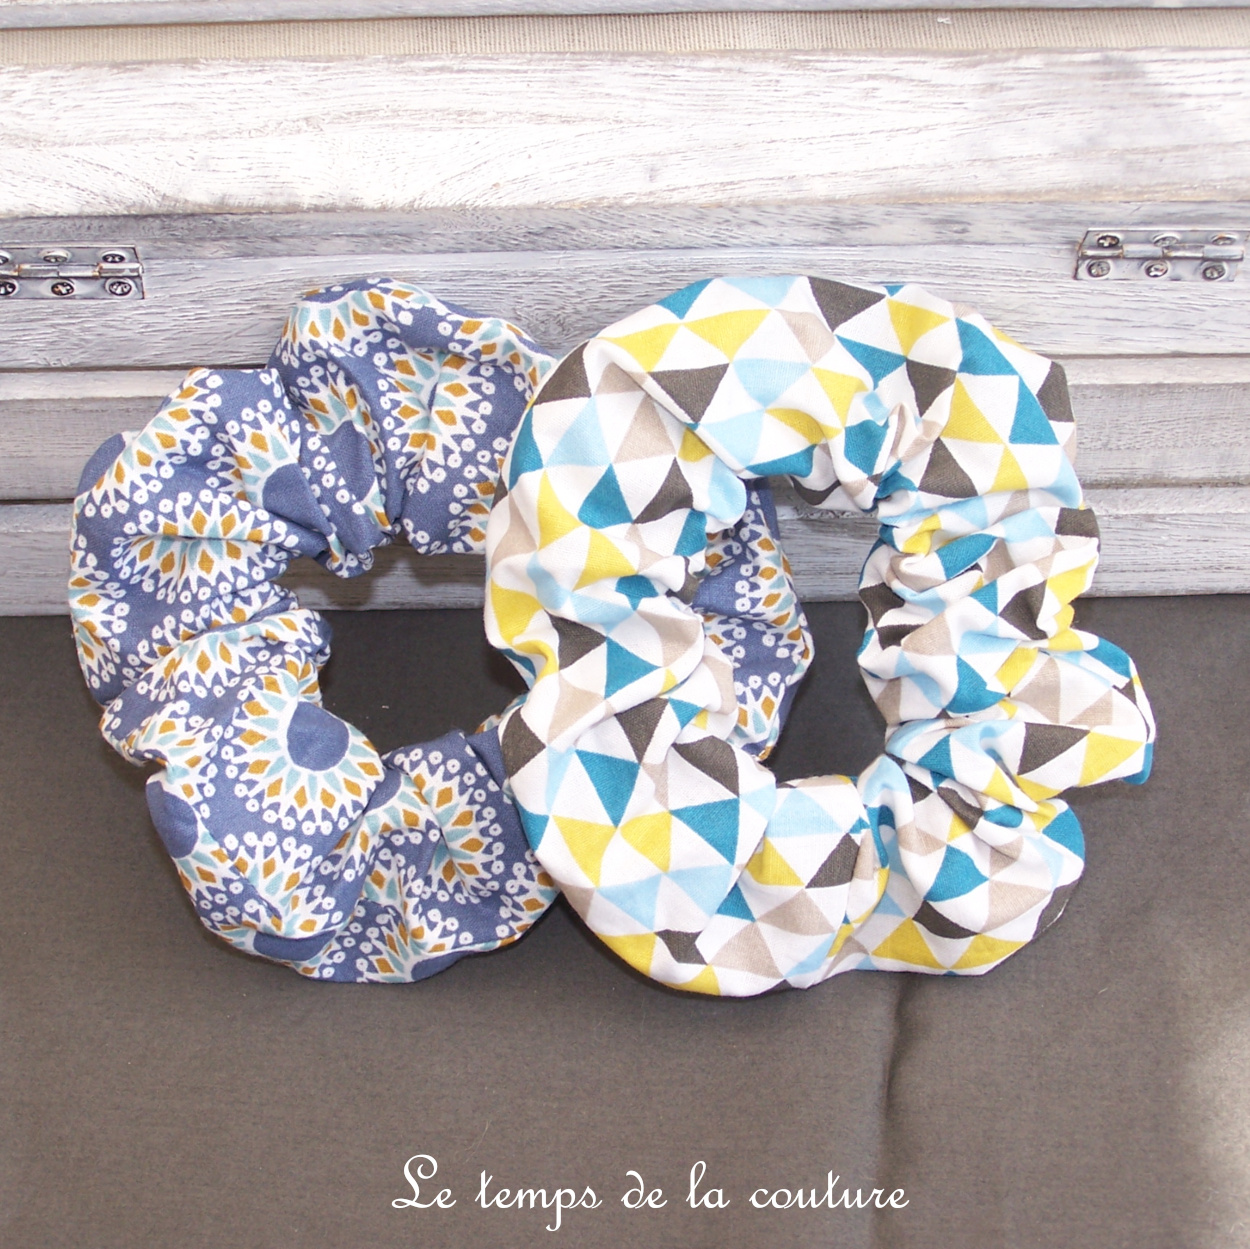 Sdb - Chouchou - geometrique fleur bleu - trianfle bleu moutarde noir blanc 03